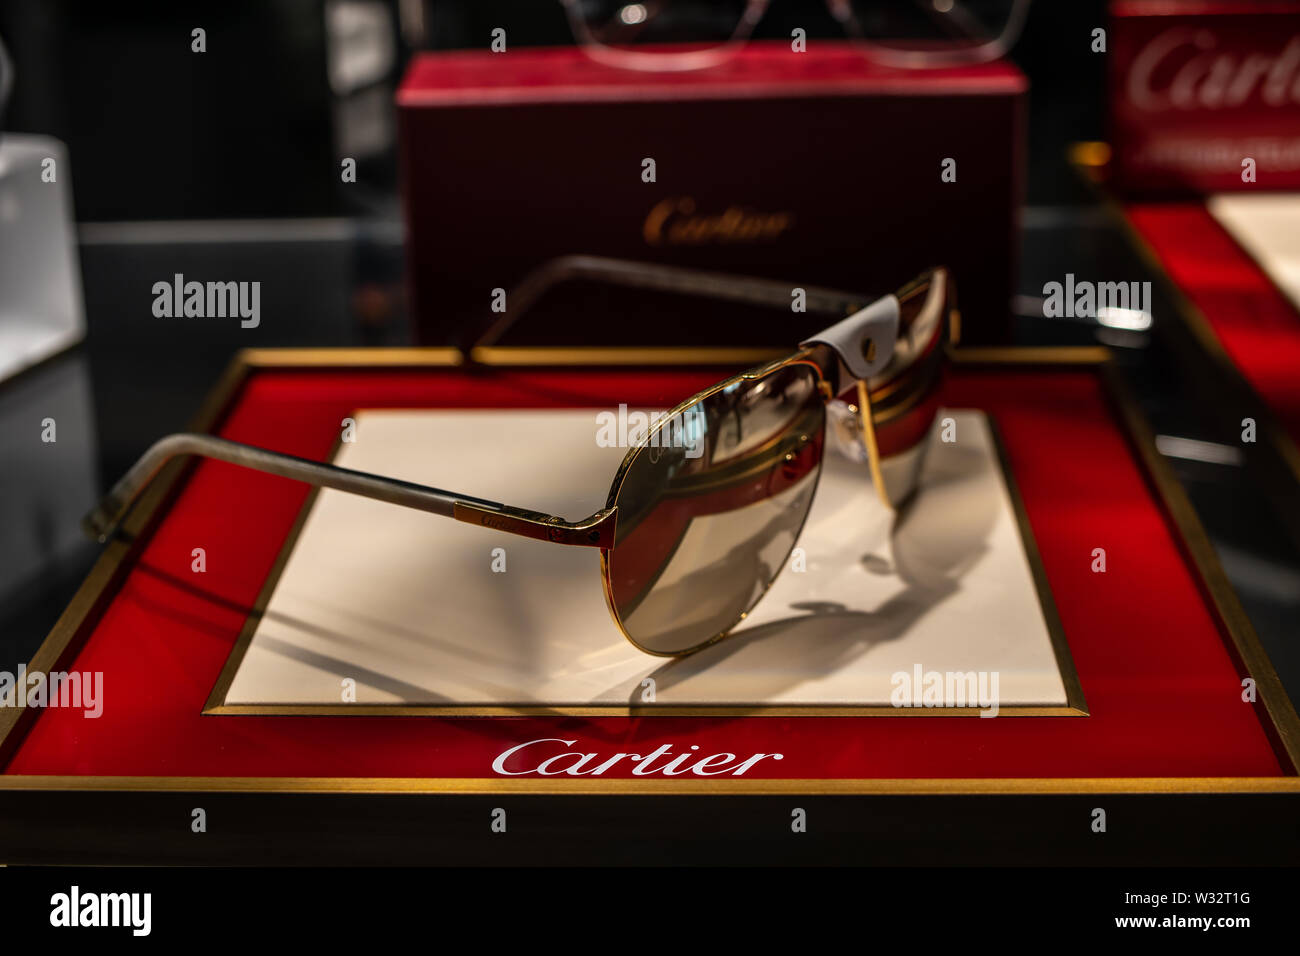 cartier optical glasses 2019